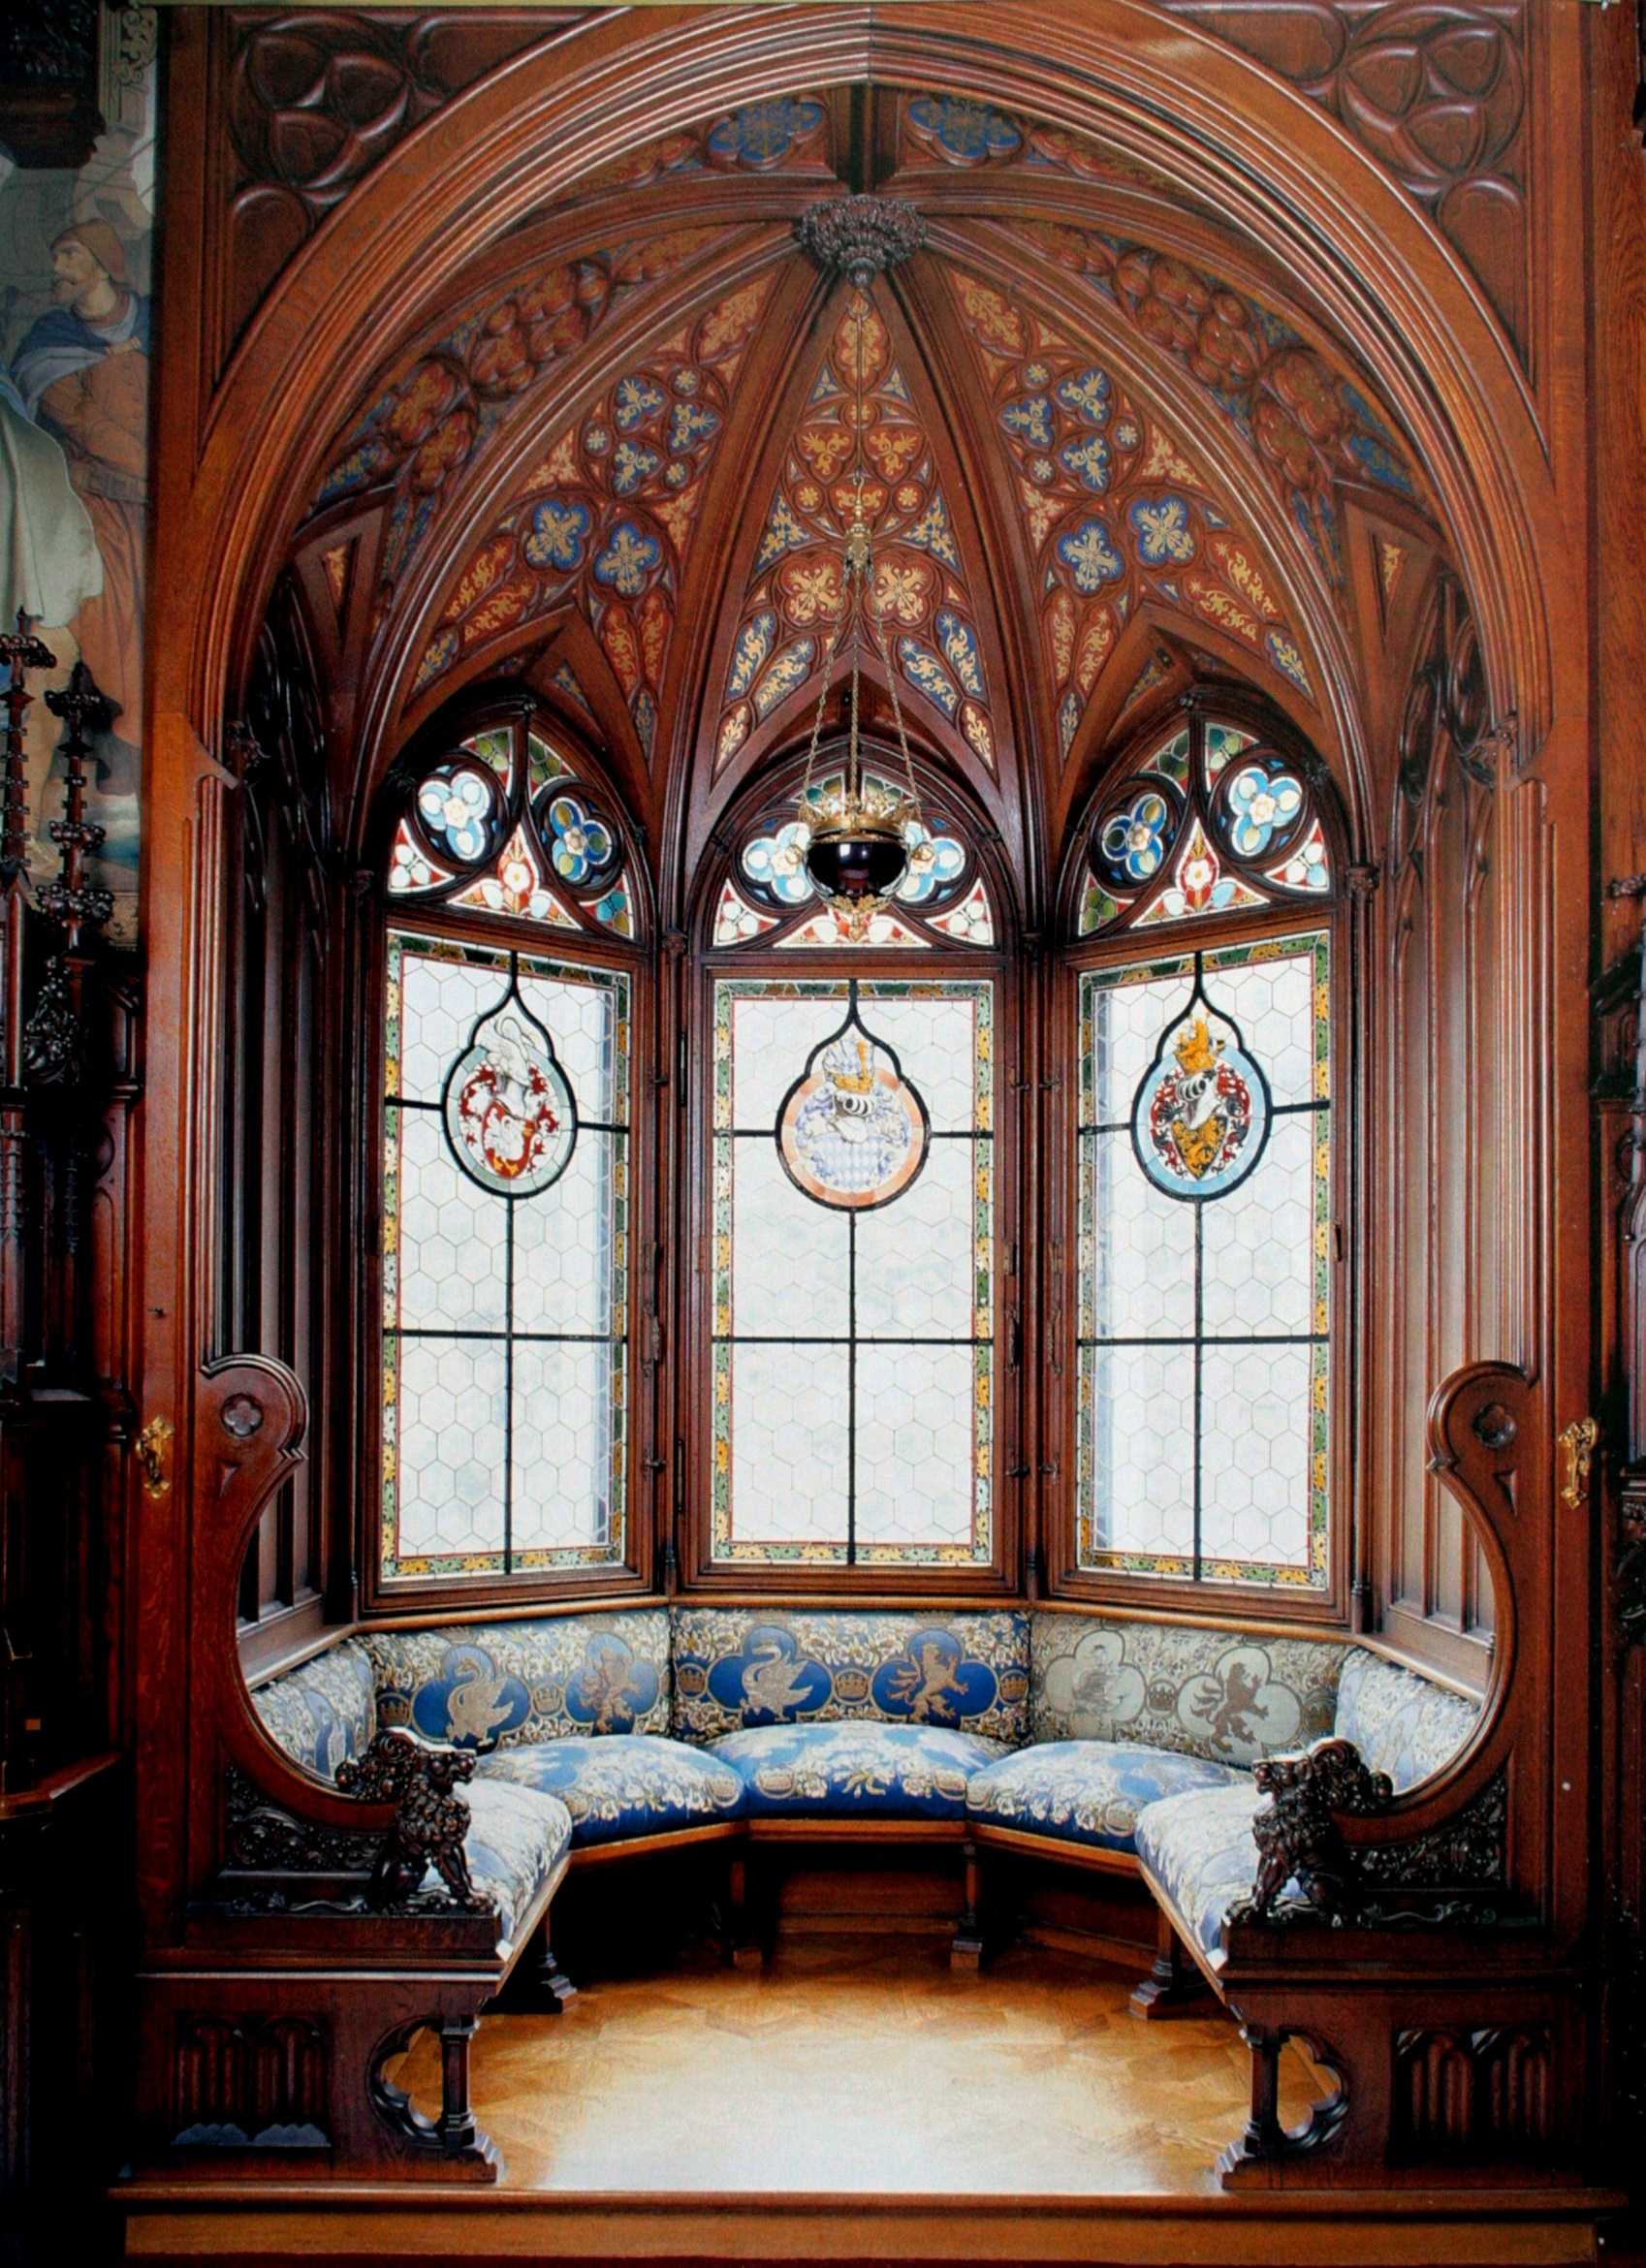 ryškus gotikinio stiliaus miegamojo interjeras